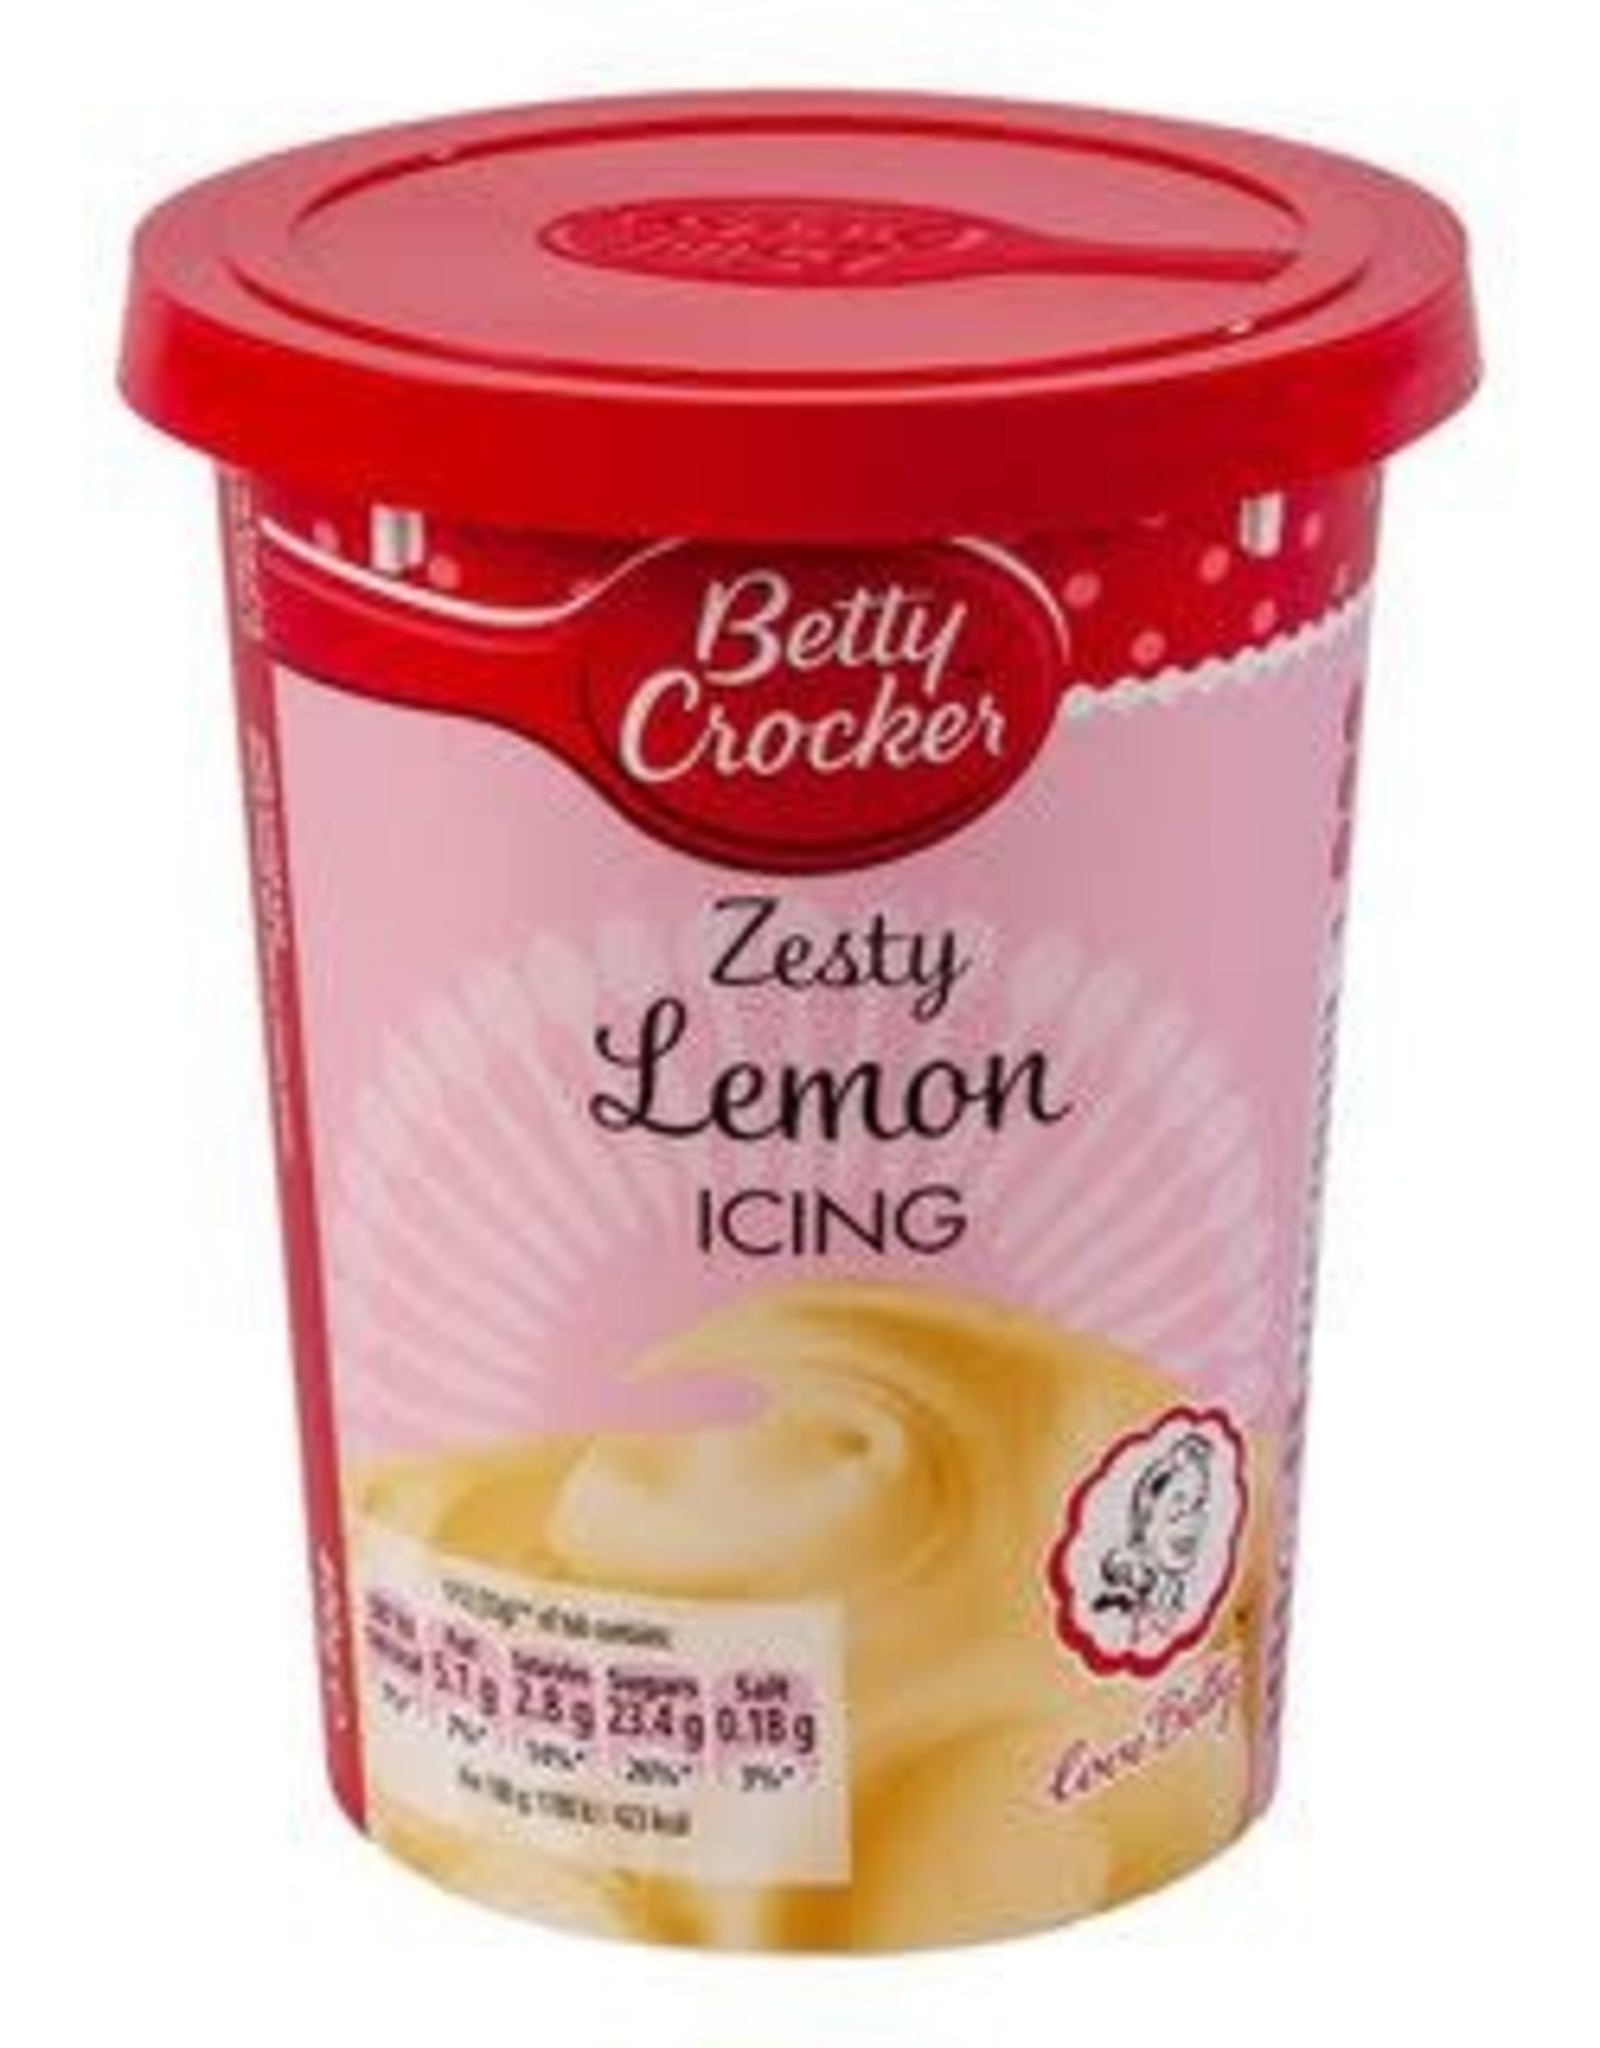 Betty Crocker Betty Crocker Zesty Lemon Icing 400 g